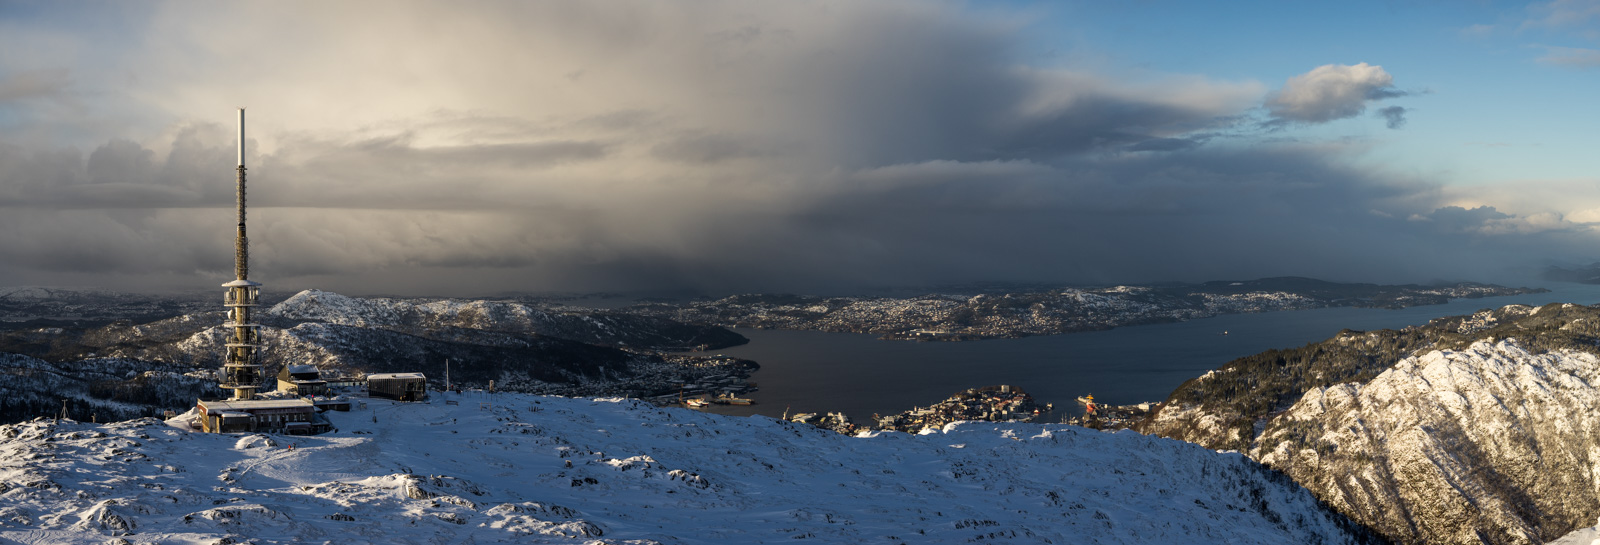 Vysielač pod vrcholom Ulriken, pod ním mesto Bergen